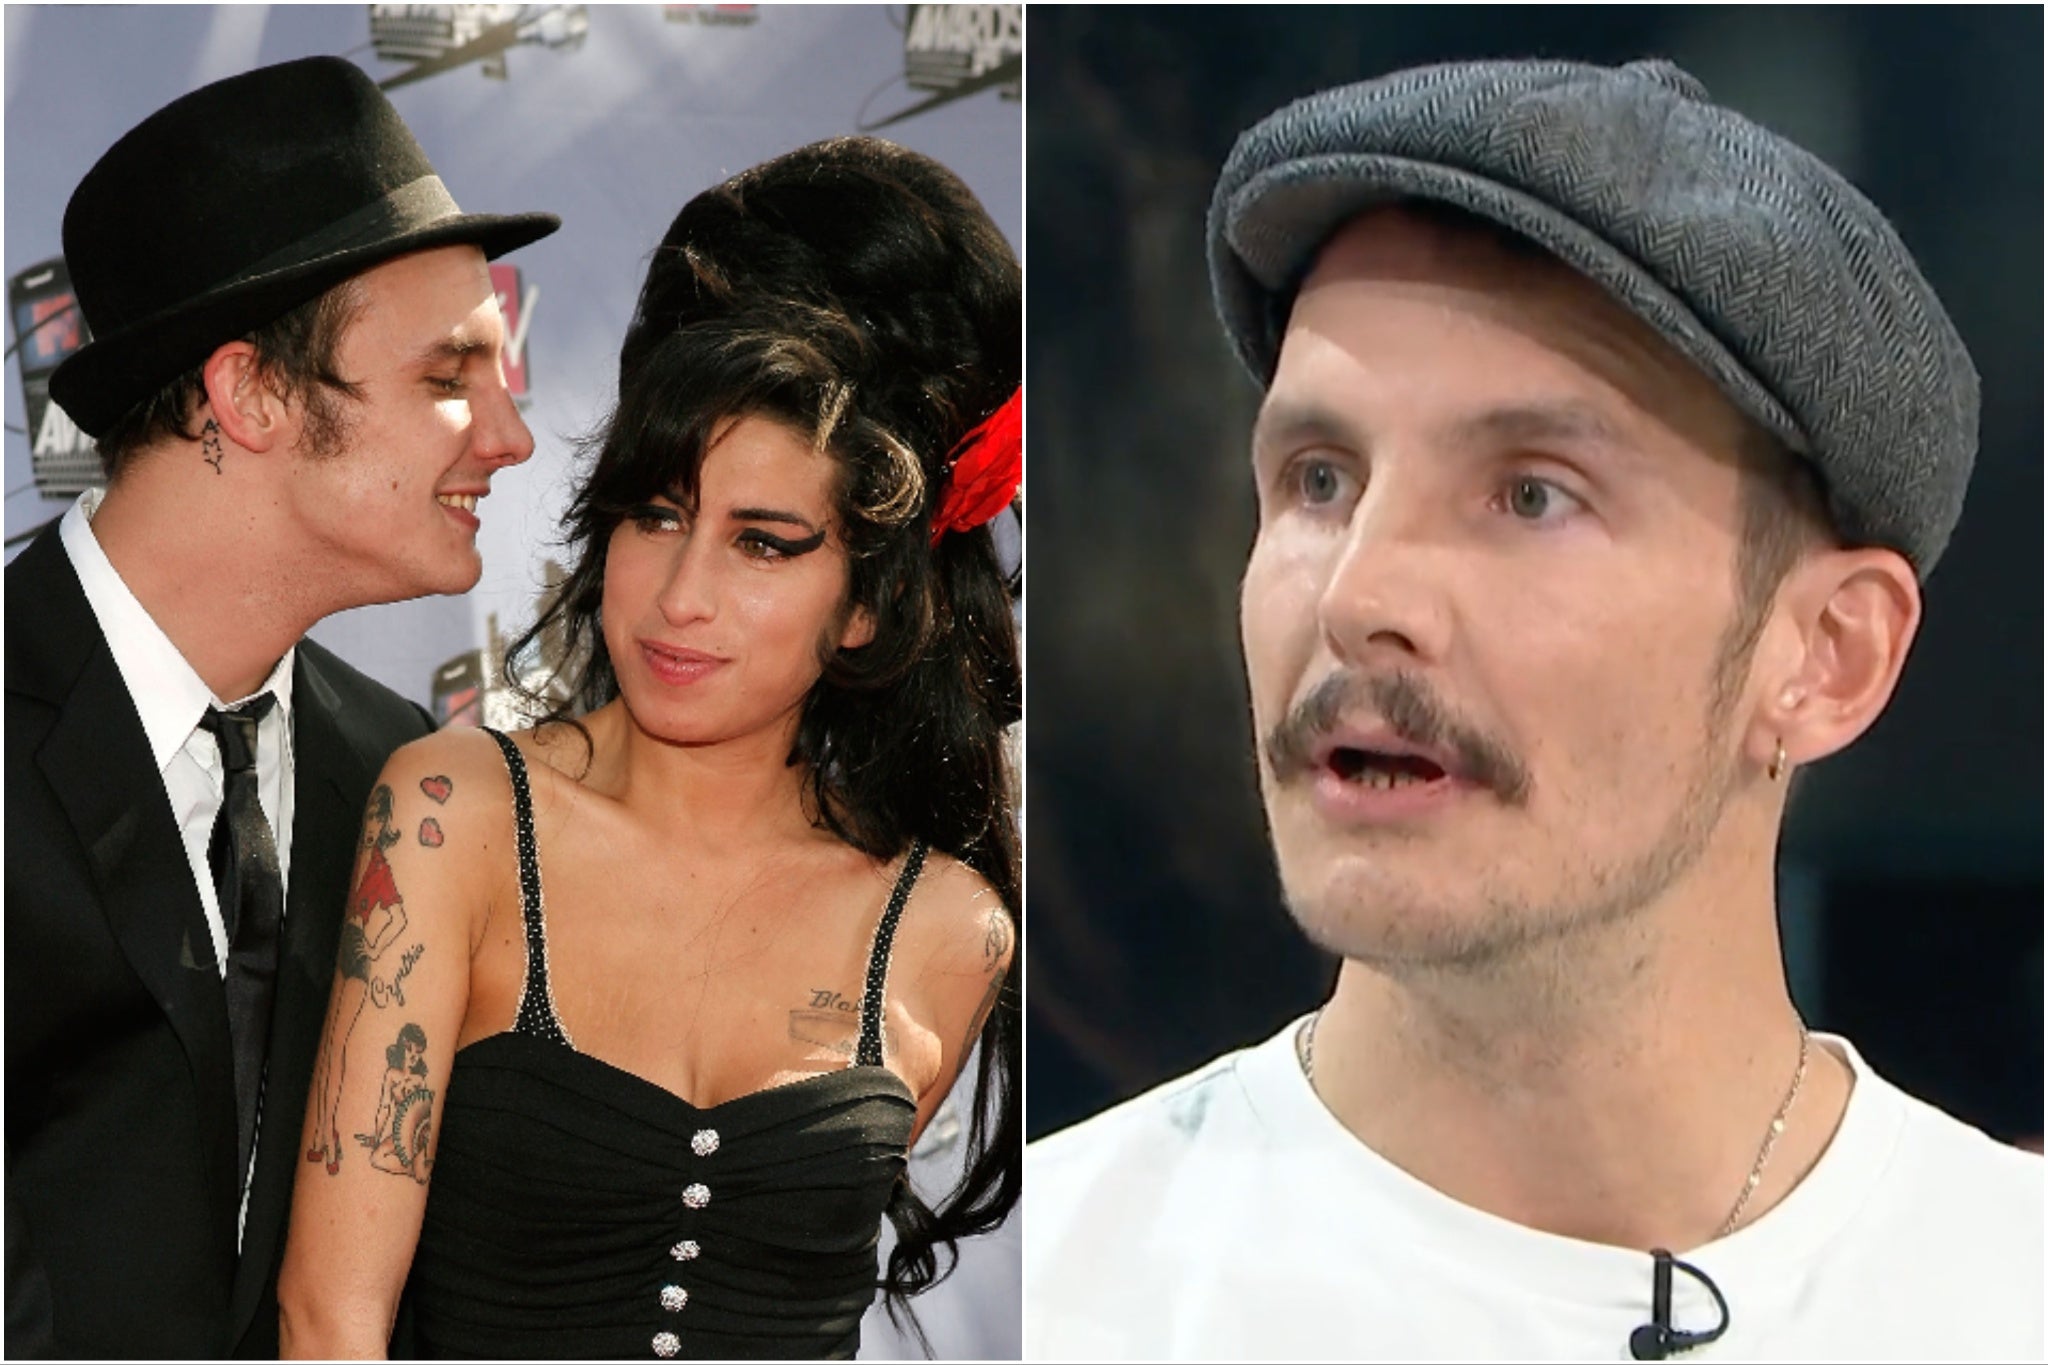 Blake Fielder-Civil ya ha arremetido contra quienes lo consideran “responsable” de la muerte de Winehouse